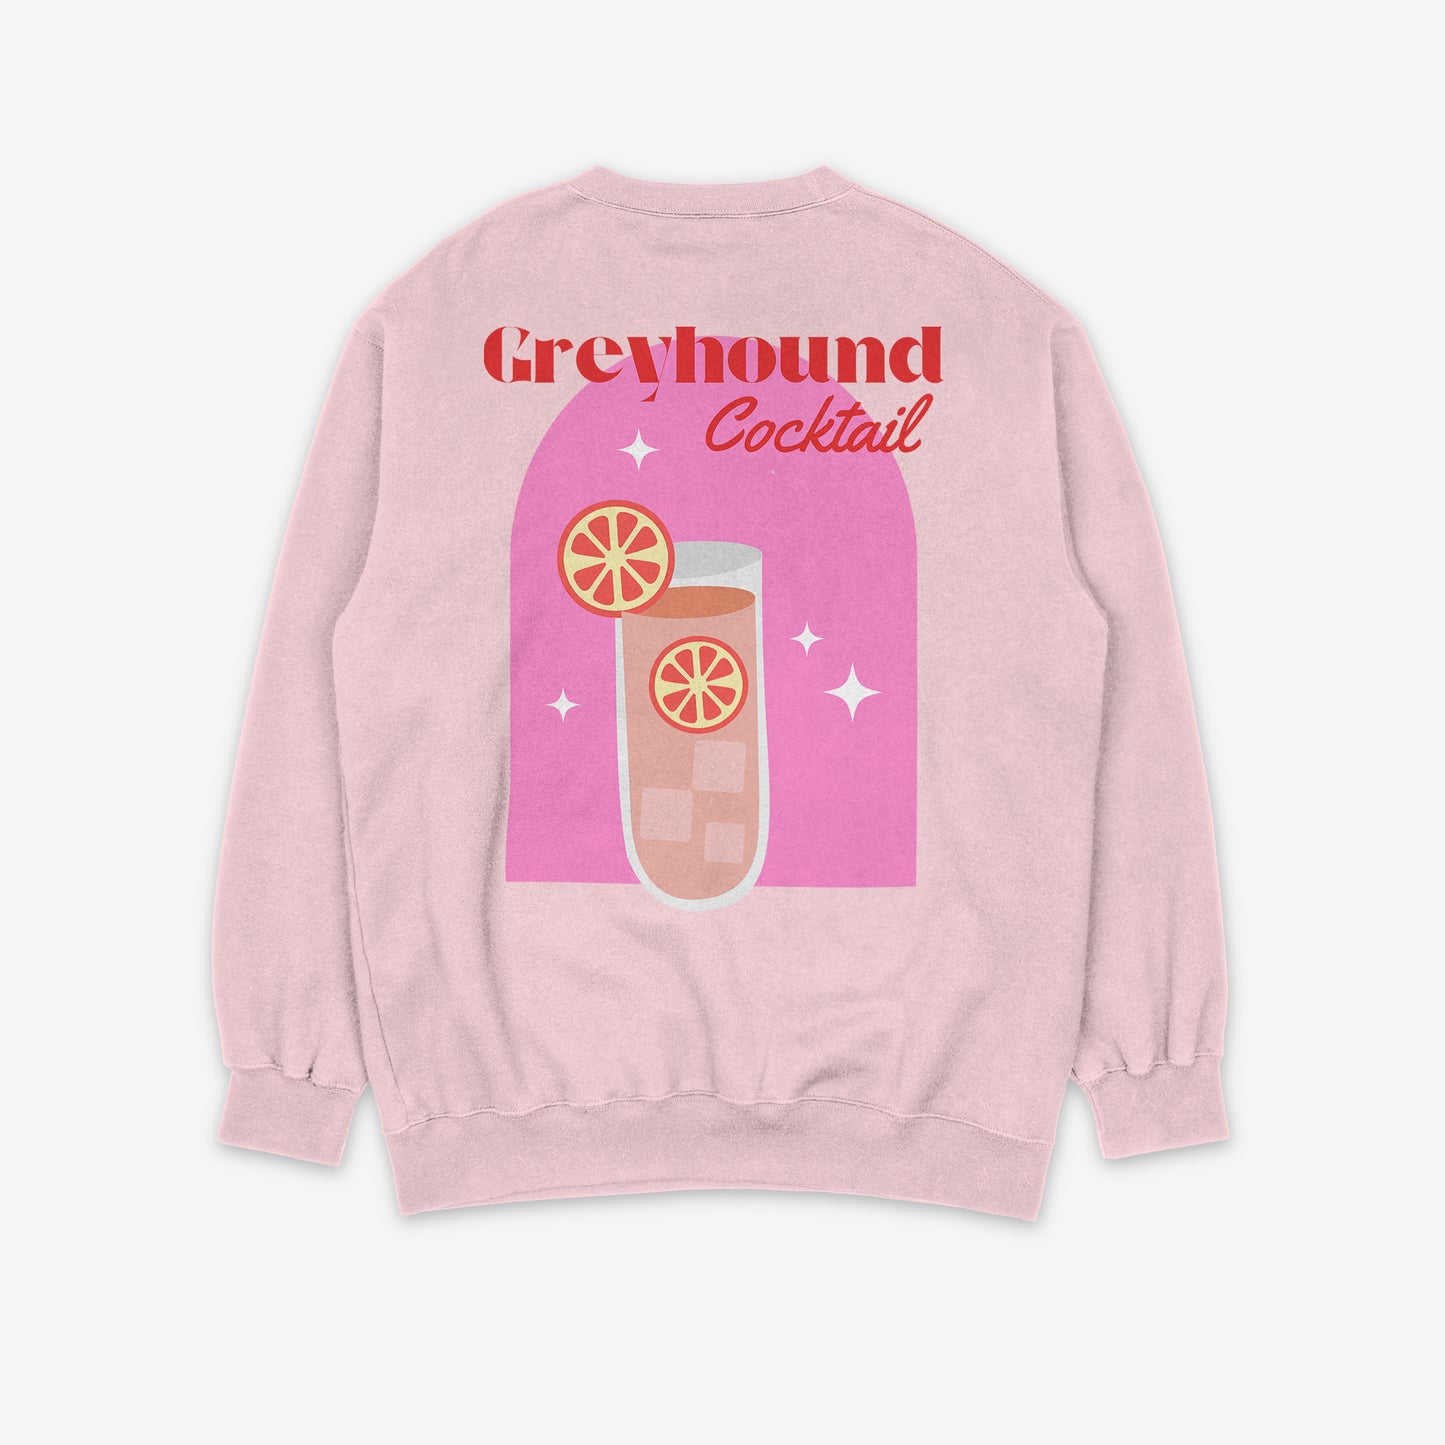 Greyhound Cocktail Sweatshirt